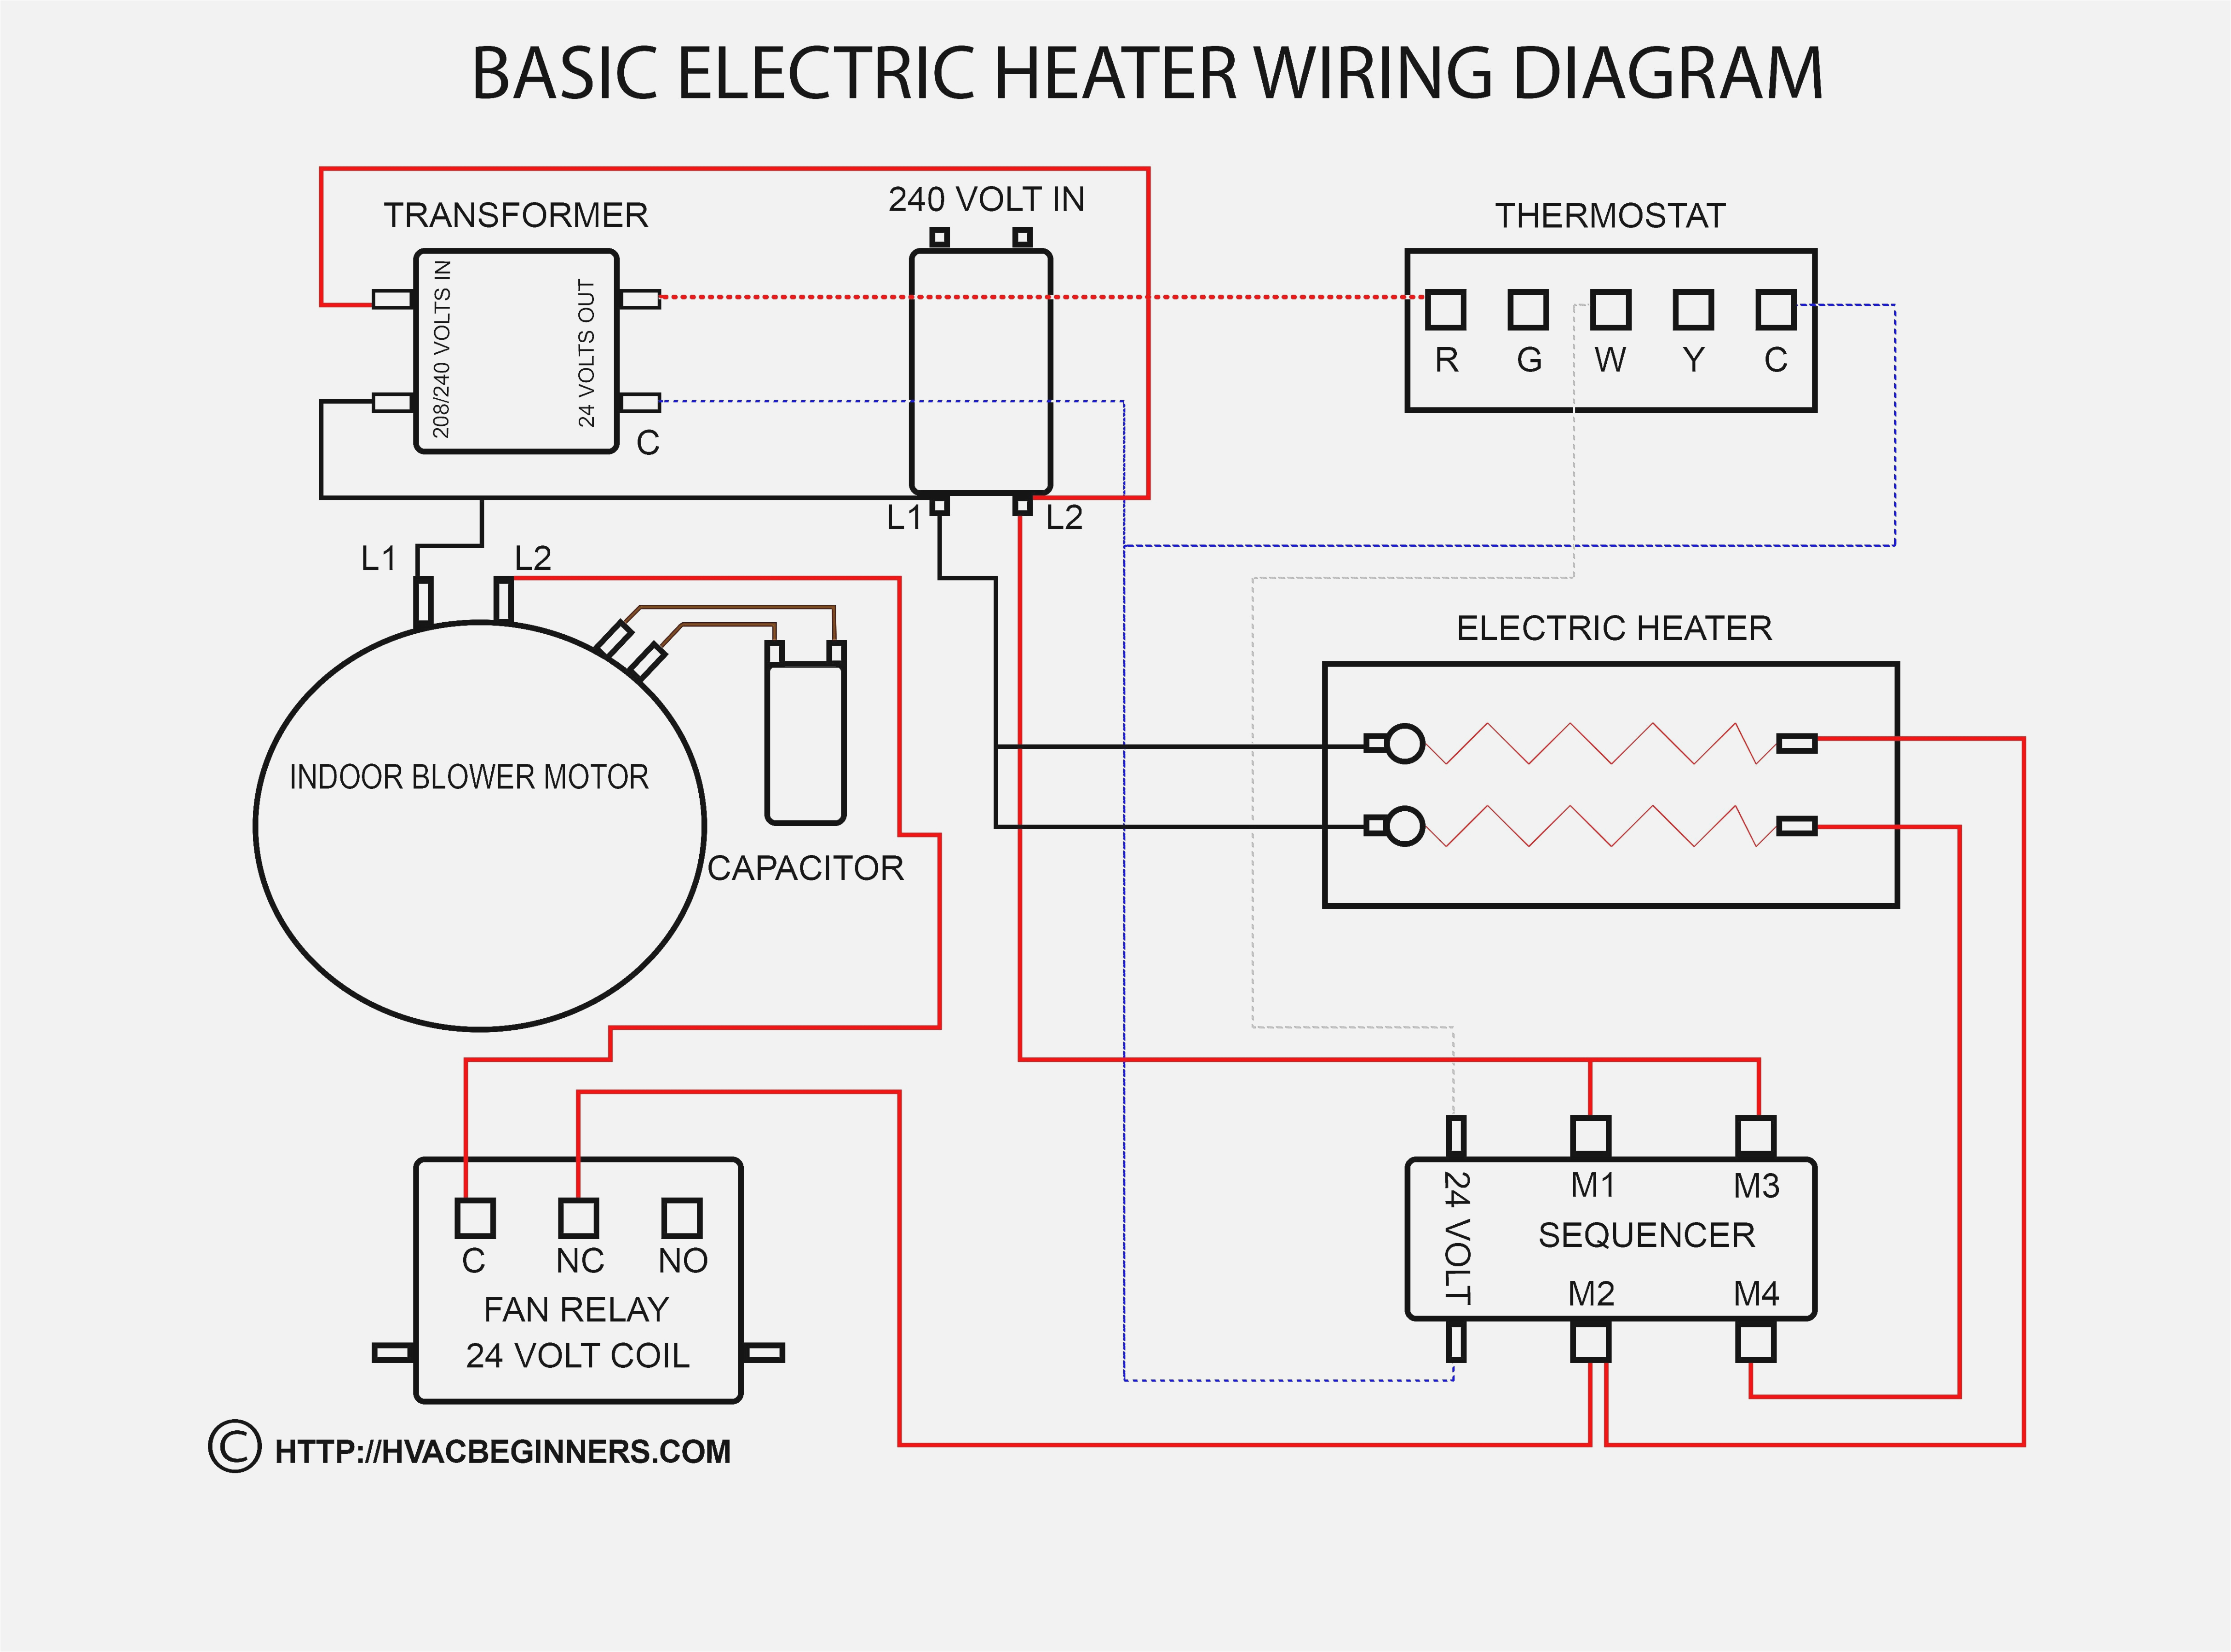 hot water wiring diagram wiring libraryhot water wiring diagram